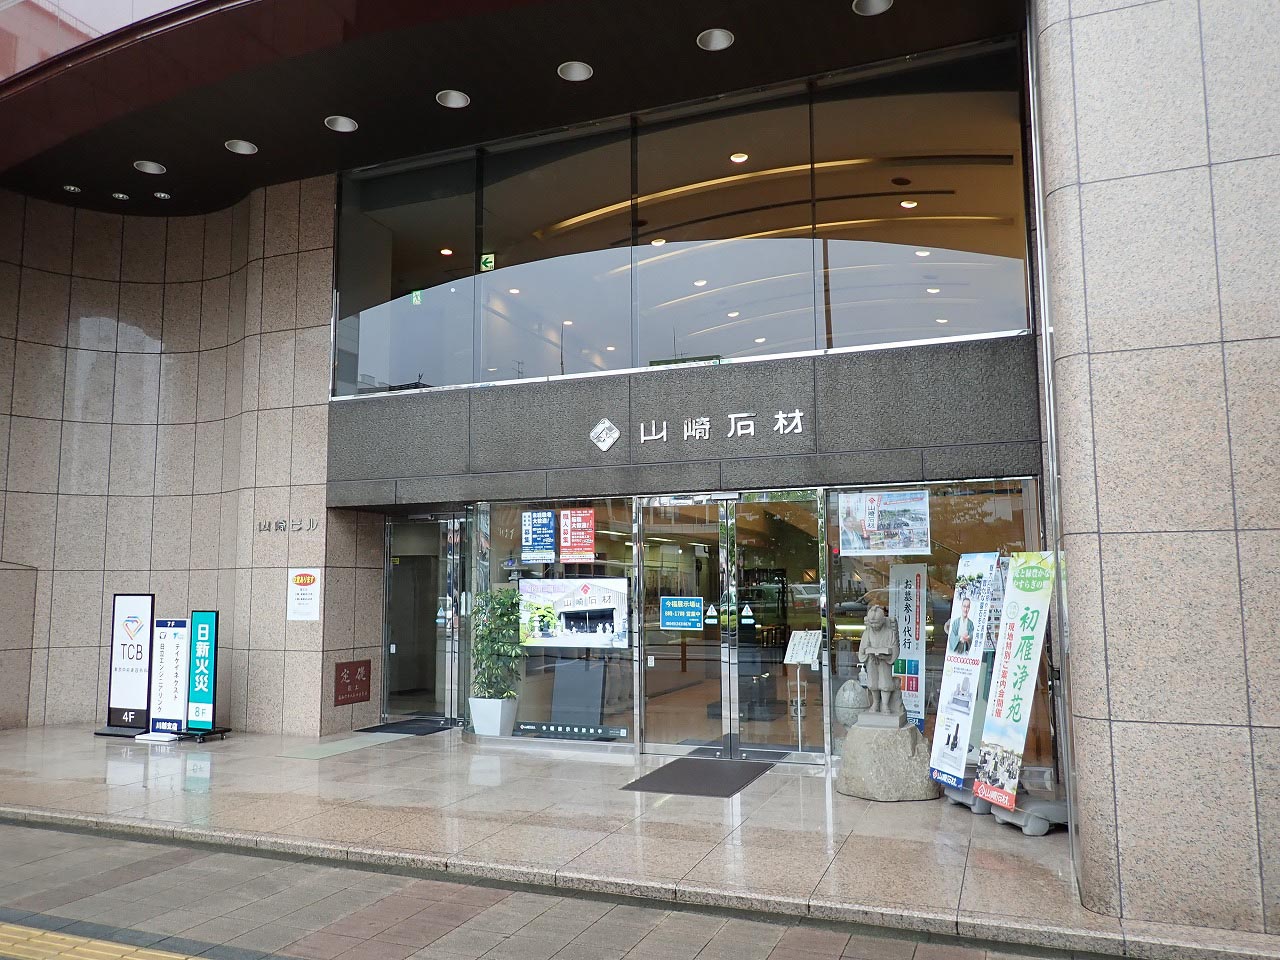 2021年7月にオープンした『TCB東京中央美容外科 川越院』